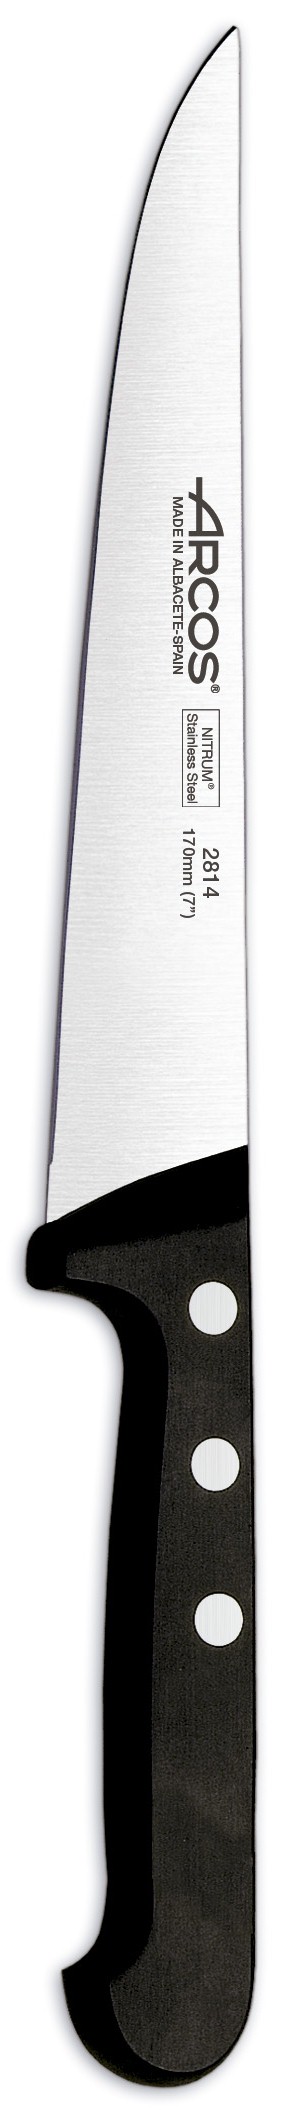 סכין מטבח ארקוס דגם 2814 - Arcos